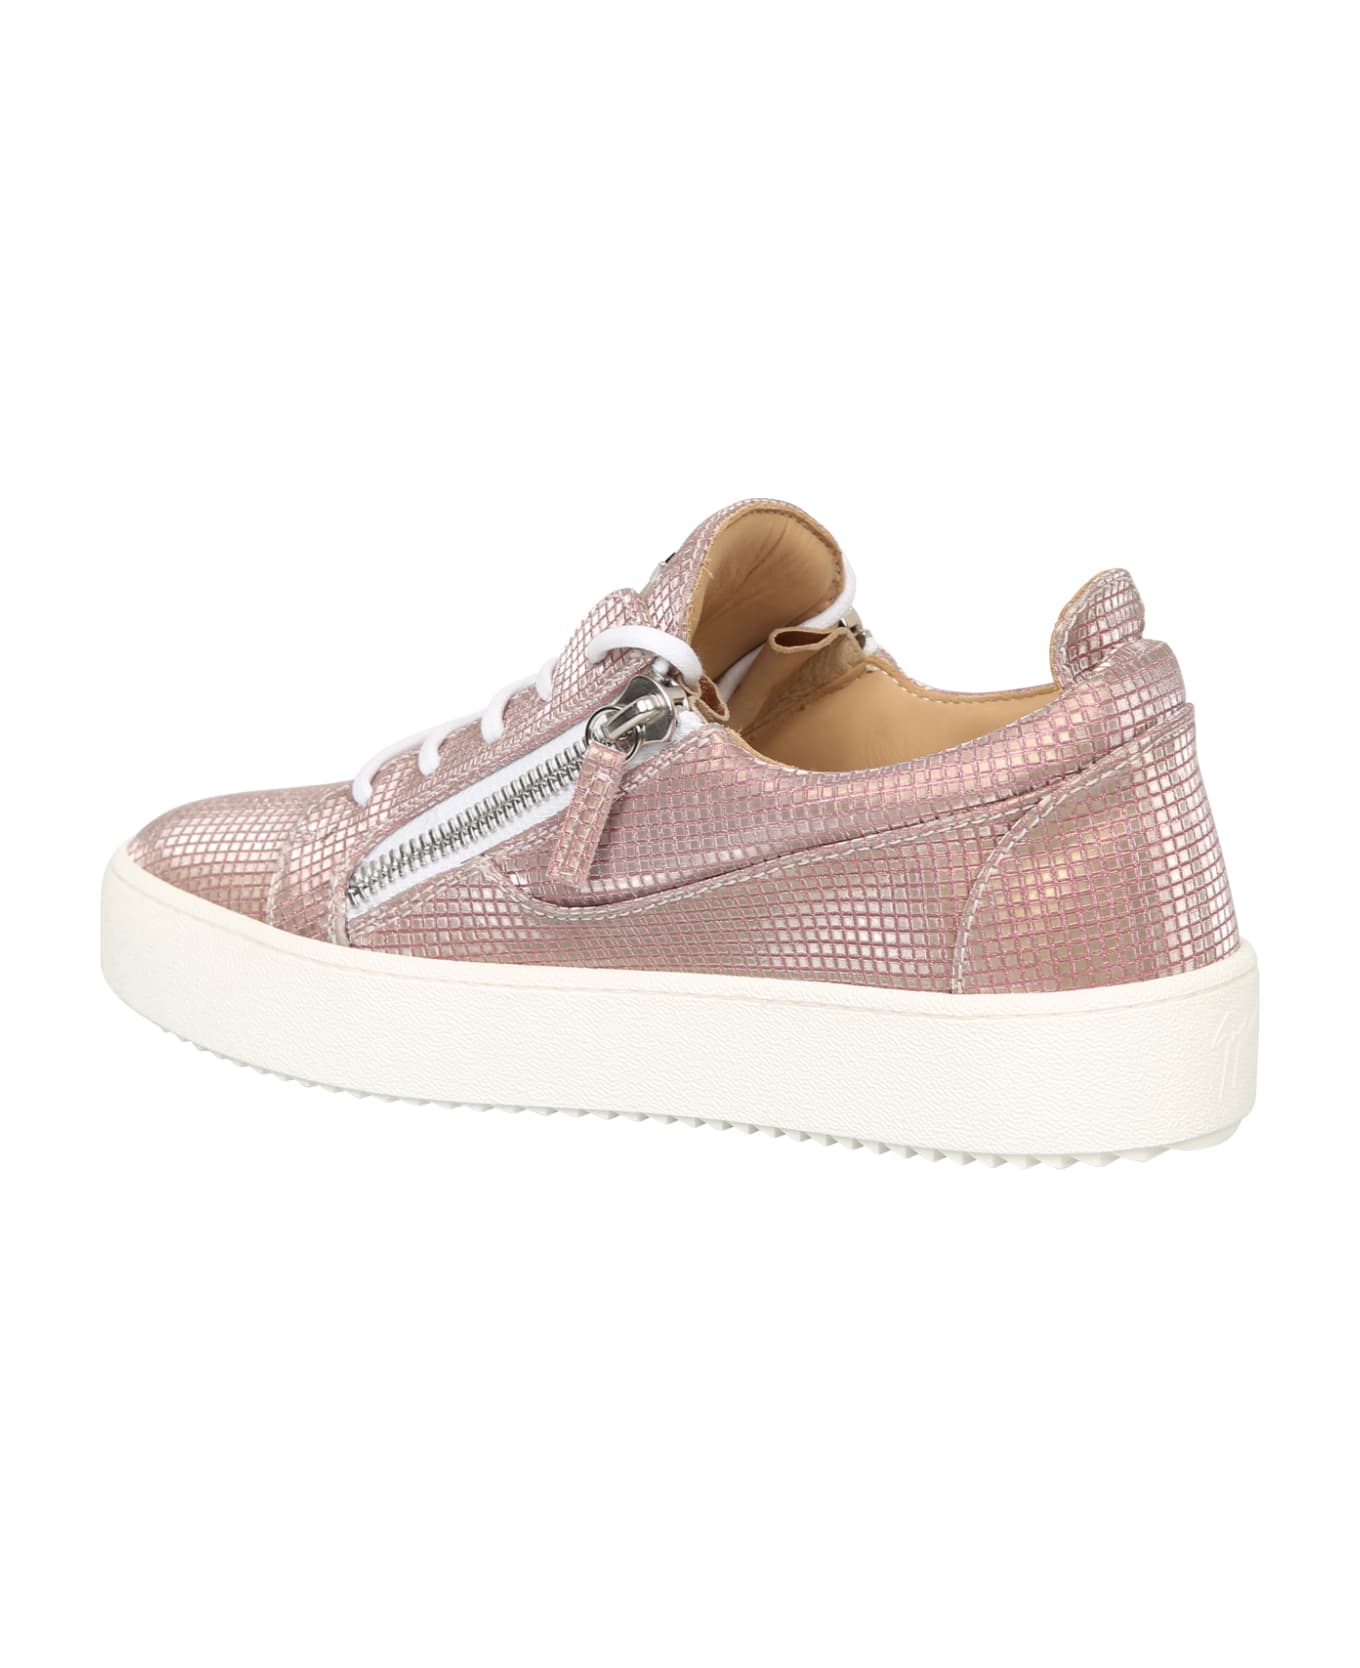 Giuseppe Zanotti Branded Sneakers - Pink スニーカー